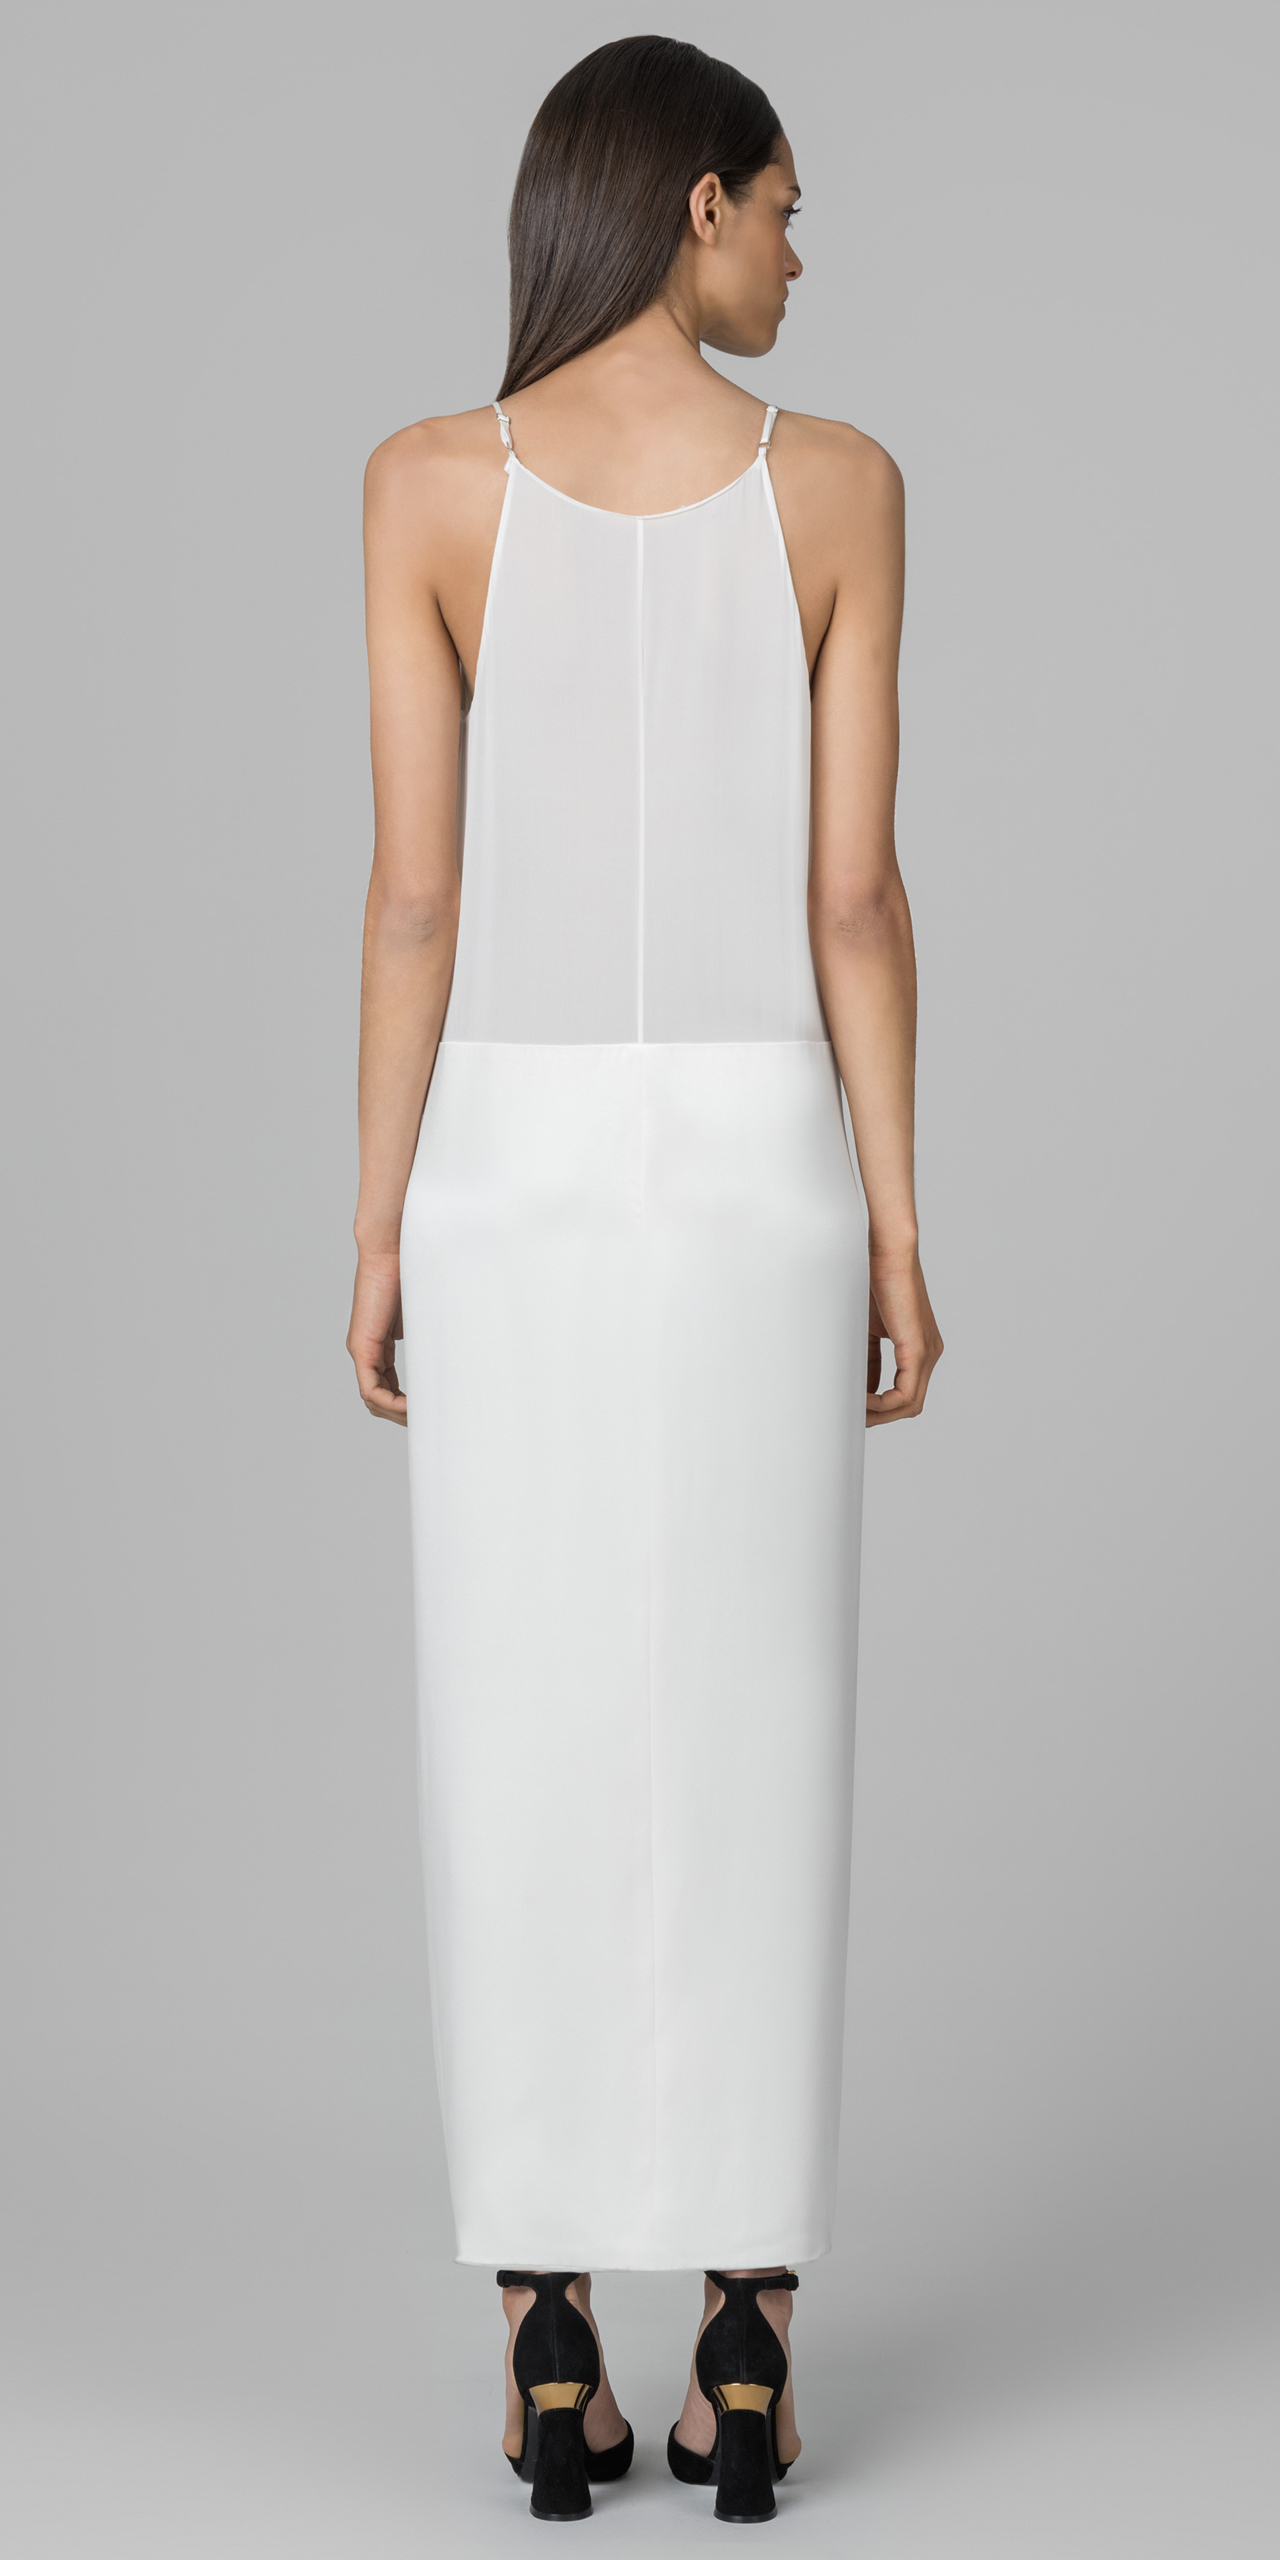 Lyst - Kimora Lee Simmons Slip Dress in White